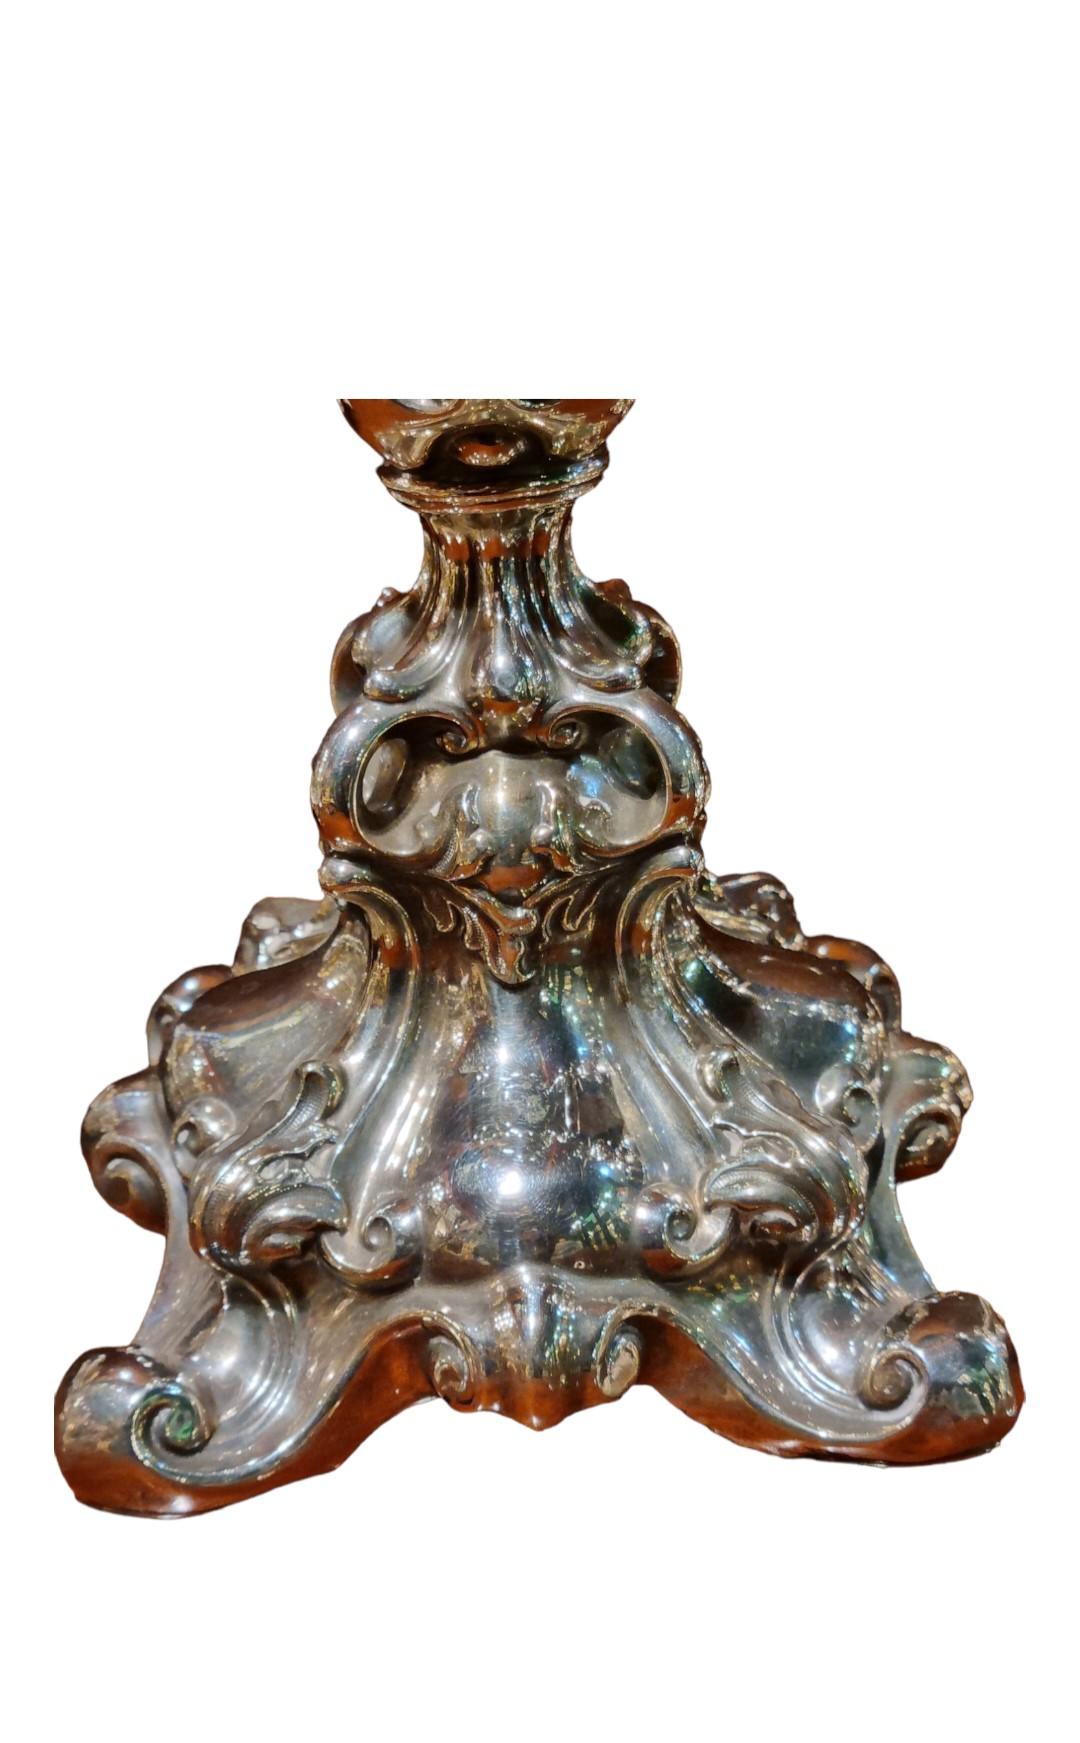 Très belle paire de chandeliers rococo français des années C.I.C.
Ces chandeliers ont été polis et laqués.
En excellent état